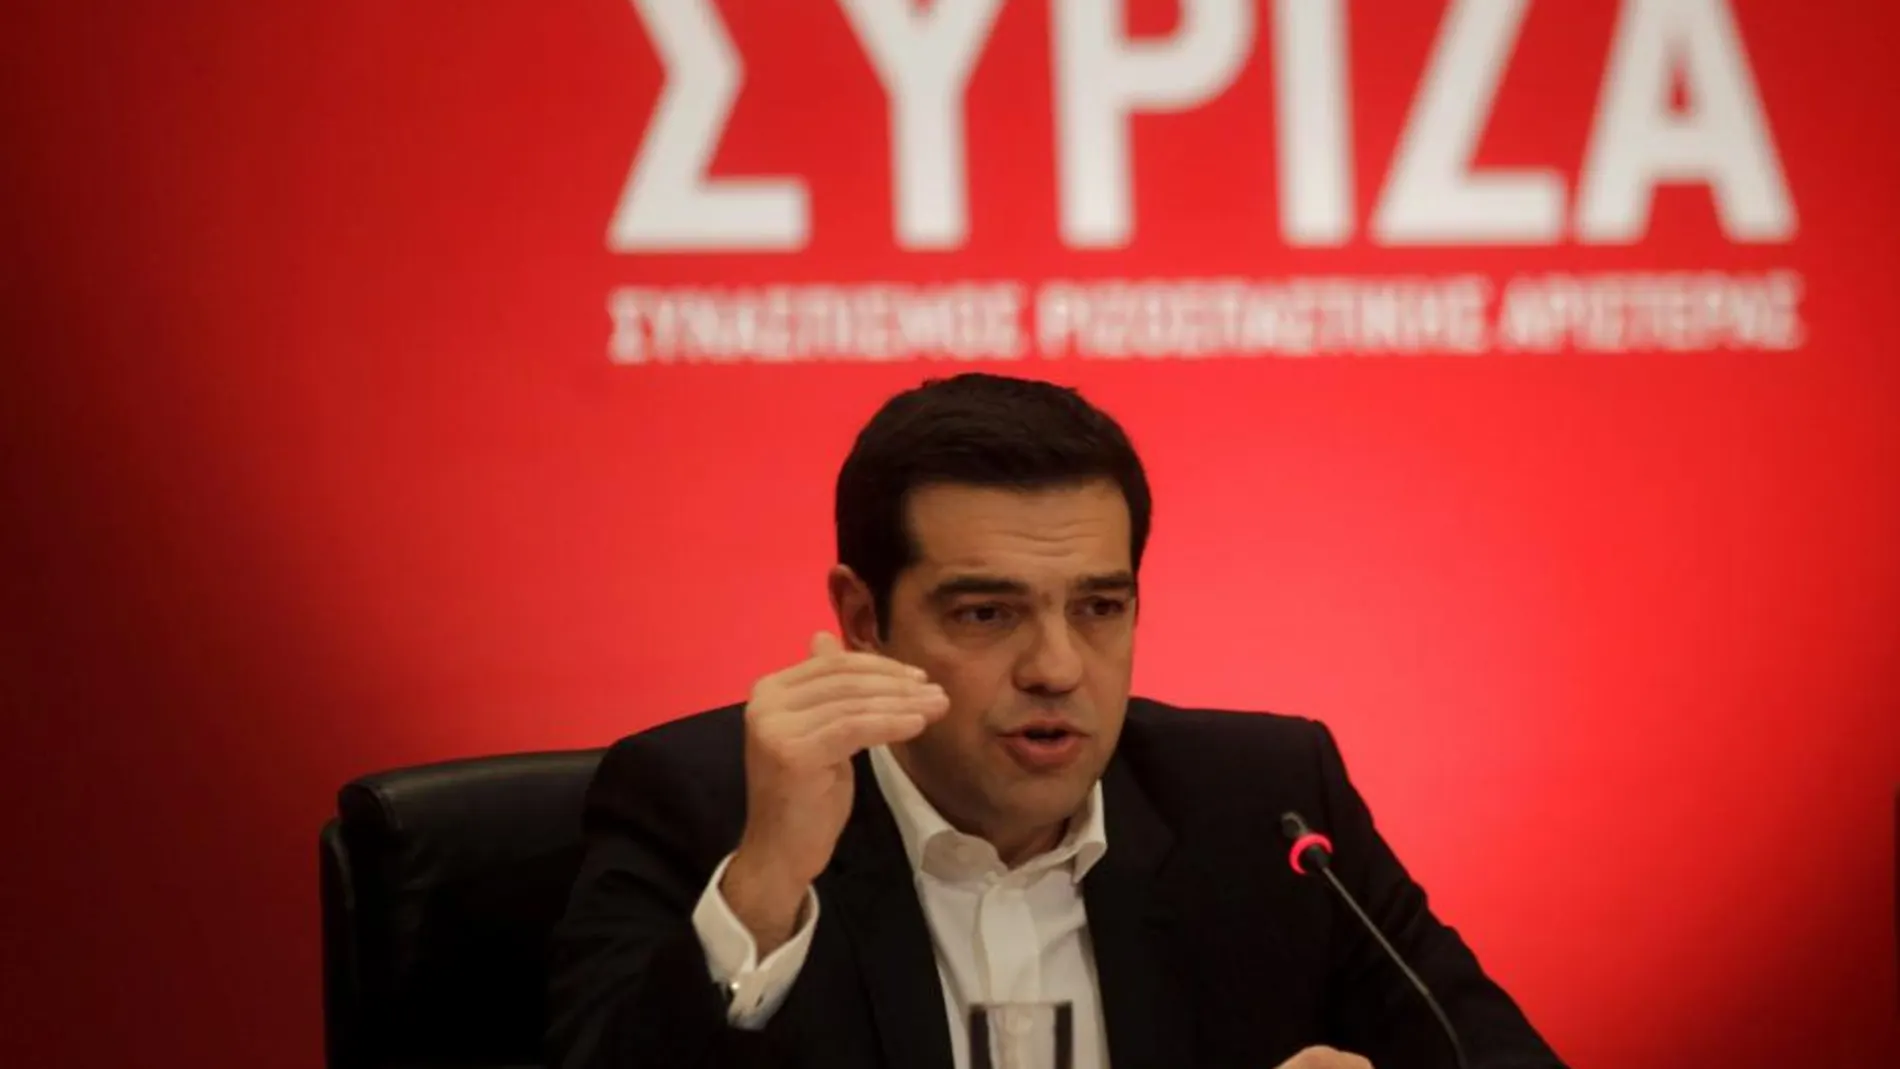 El líder de Syriza, Alexis Tsipras, durante una entrevista con las televisiones griegas.